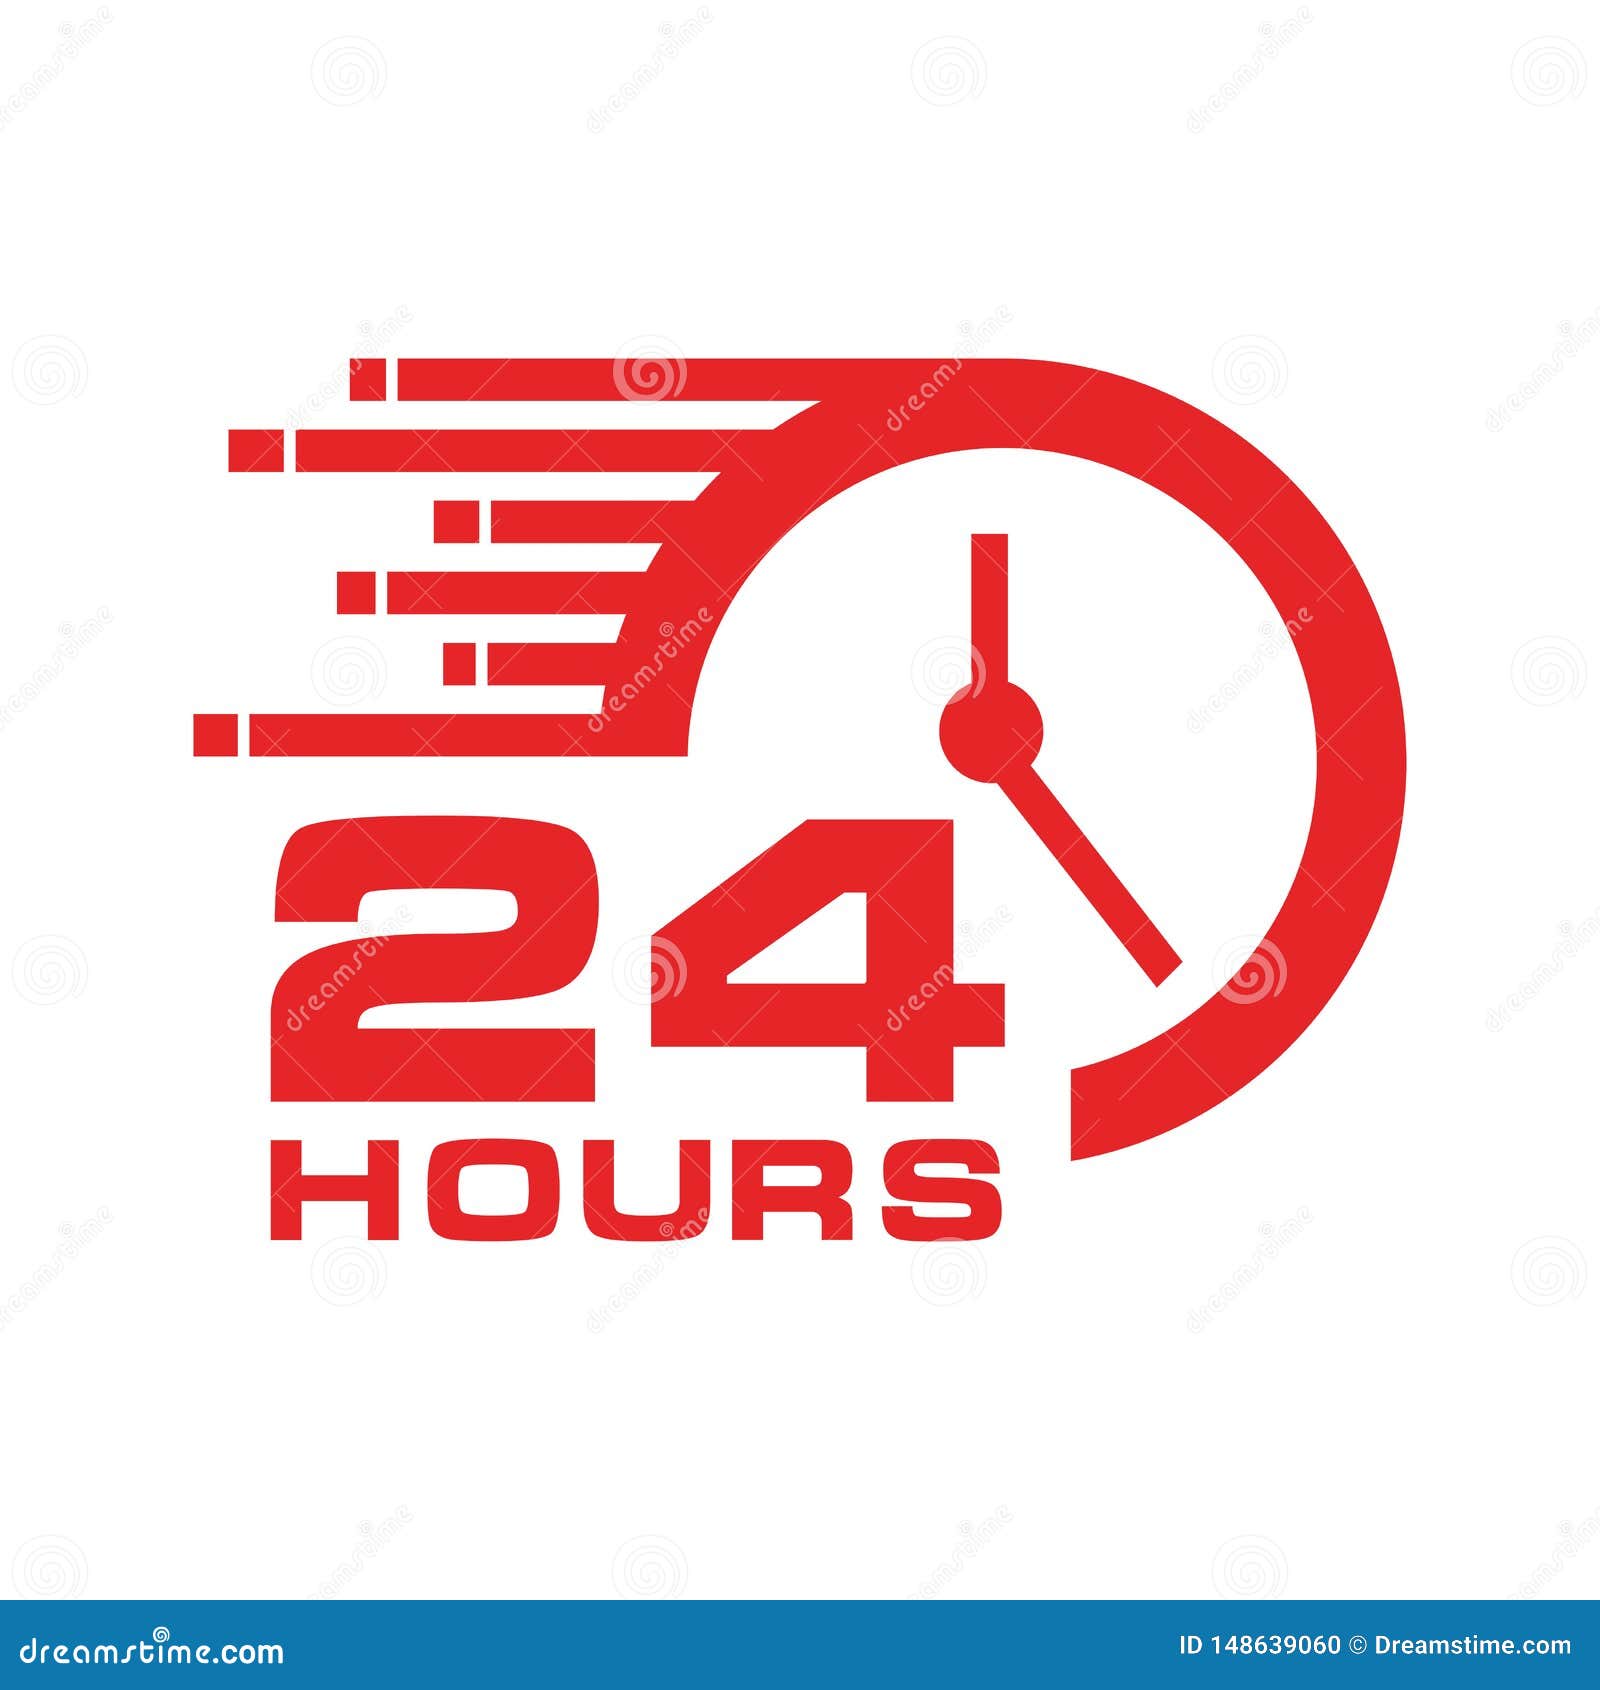 Biểu tượng 24 giờ: Hãy khám phá biểu tượng 24 giờ! Đây là biểu tượng độc đáo, tượng trưng cho sự liên tục và liên kết với thời gian. Được sử dụng rộng rãi trong đời sống thường ngày, biểu tượng 24 giờ còn có ý nghĩa rất lớn trong các lĩnh vực như giao thông, công nghiệp và kinh tế.